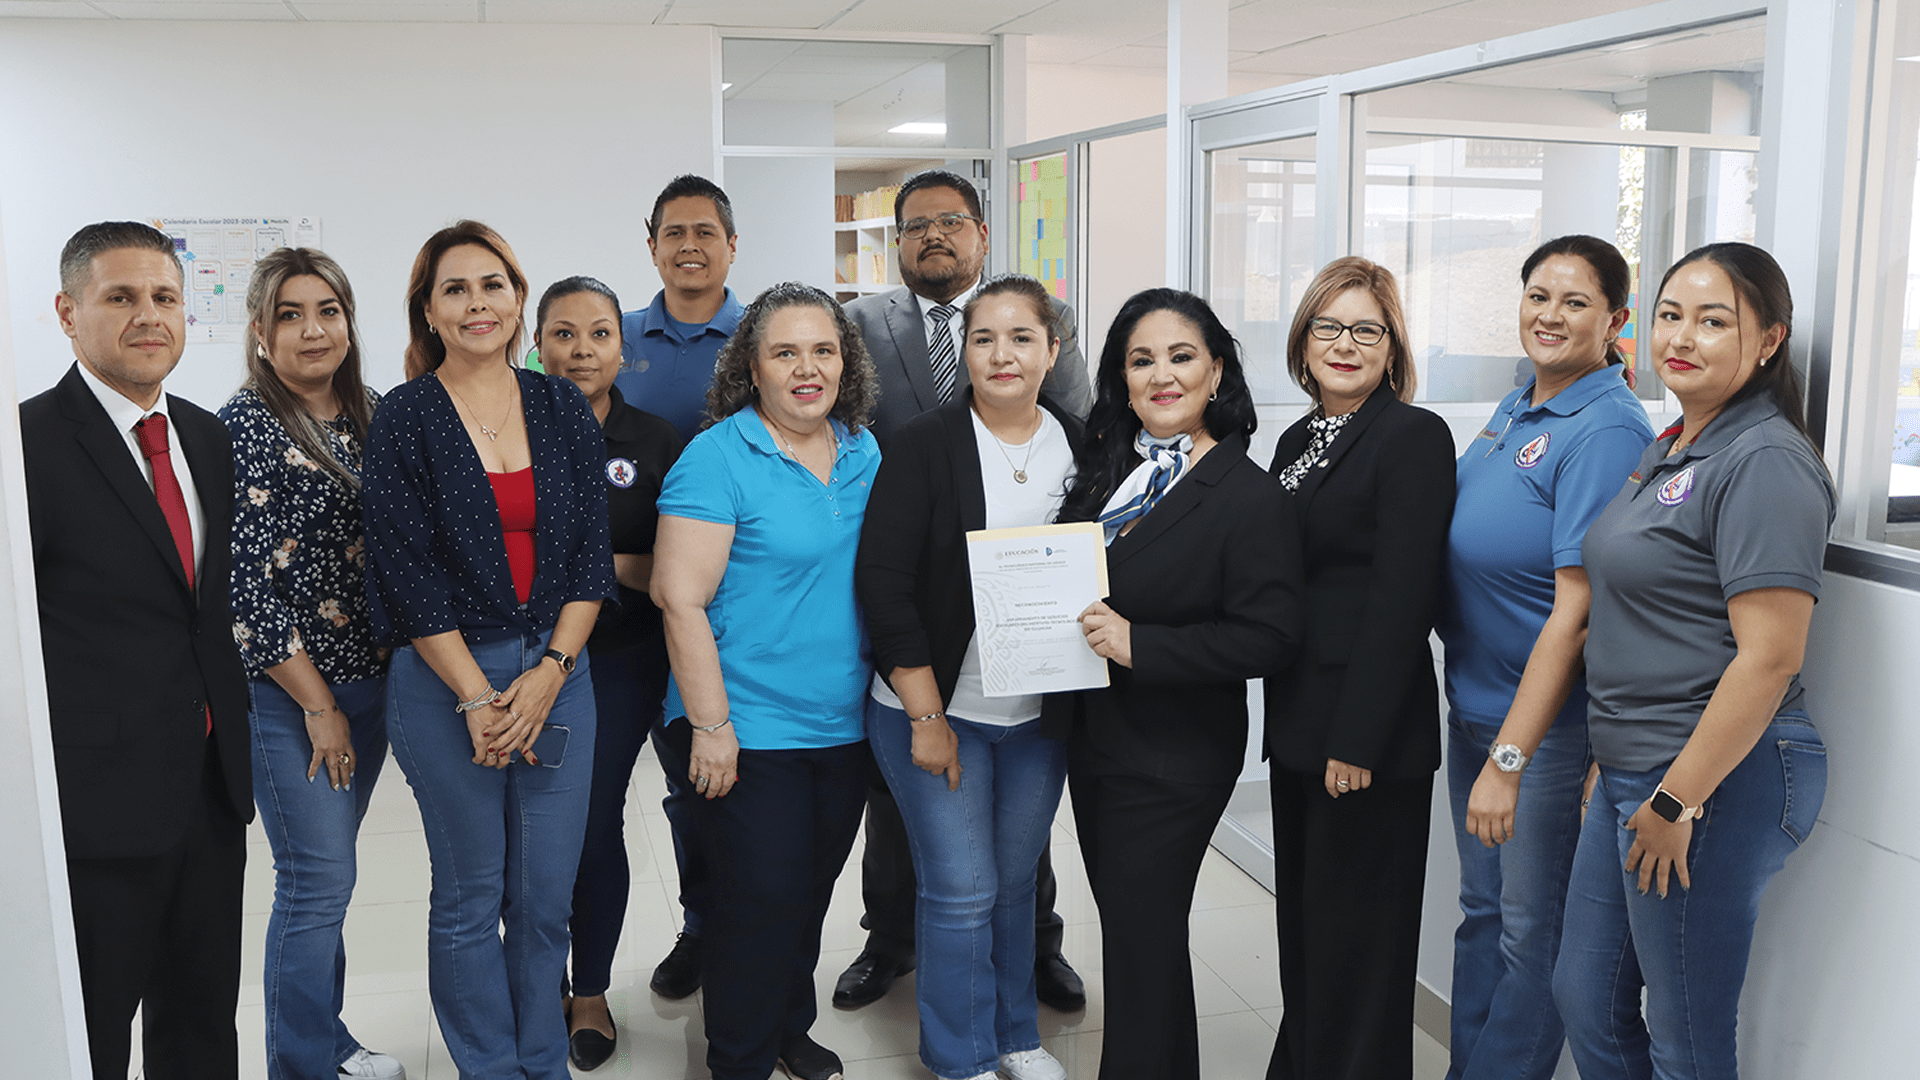 Recibe reconocimiento el Instituto Tecnológico de Culiacán por incrementar el porcentaje de titulados